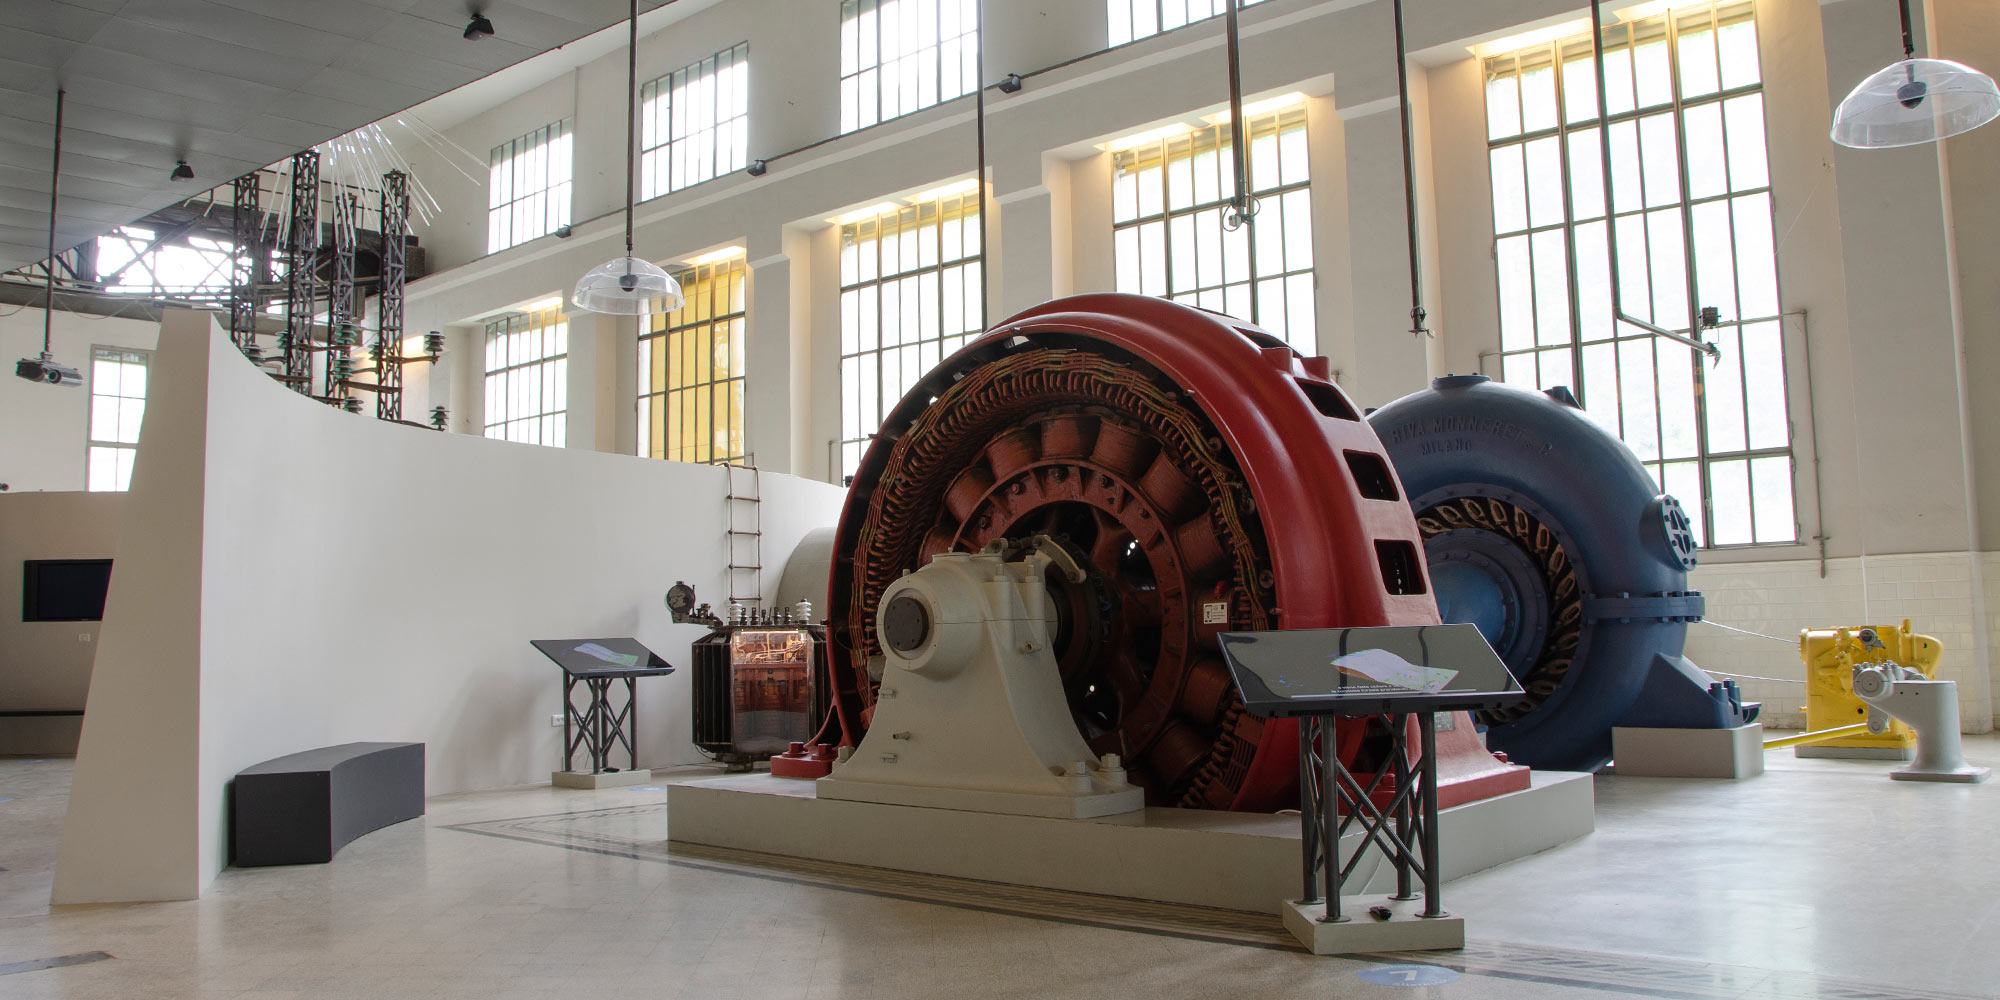 L'ex sala macchine, oggi parte del percorso espositivo, del musil - museo dell'energia idroelettrica di Valle Camonica a Cedegolo